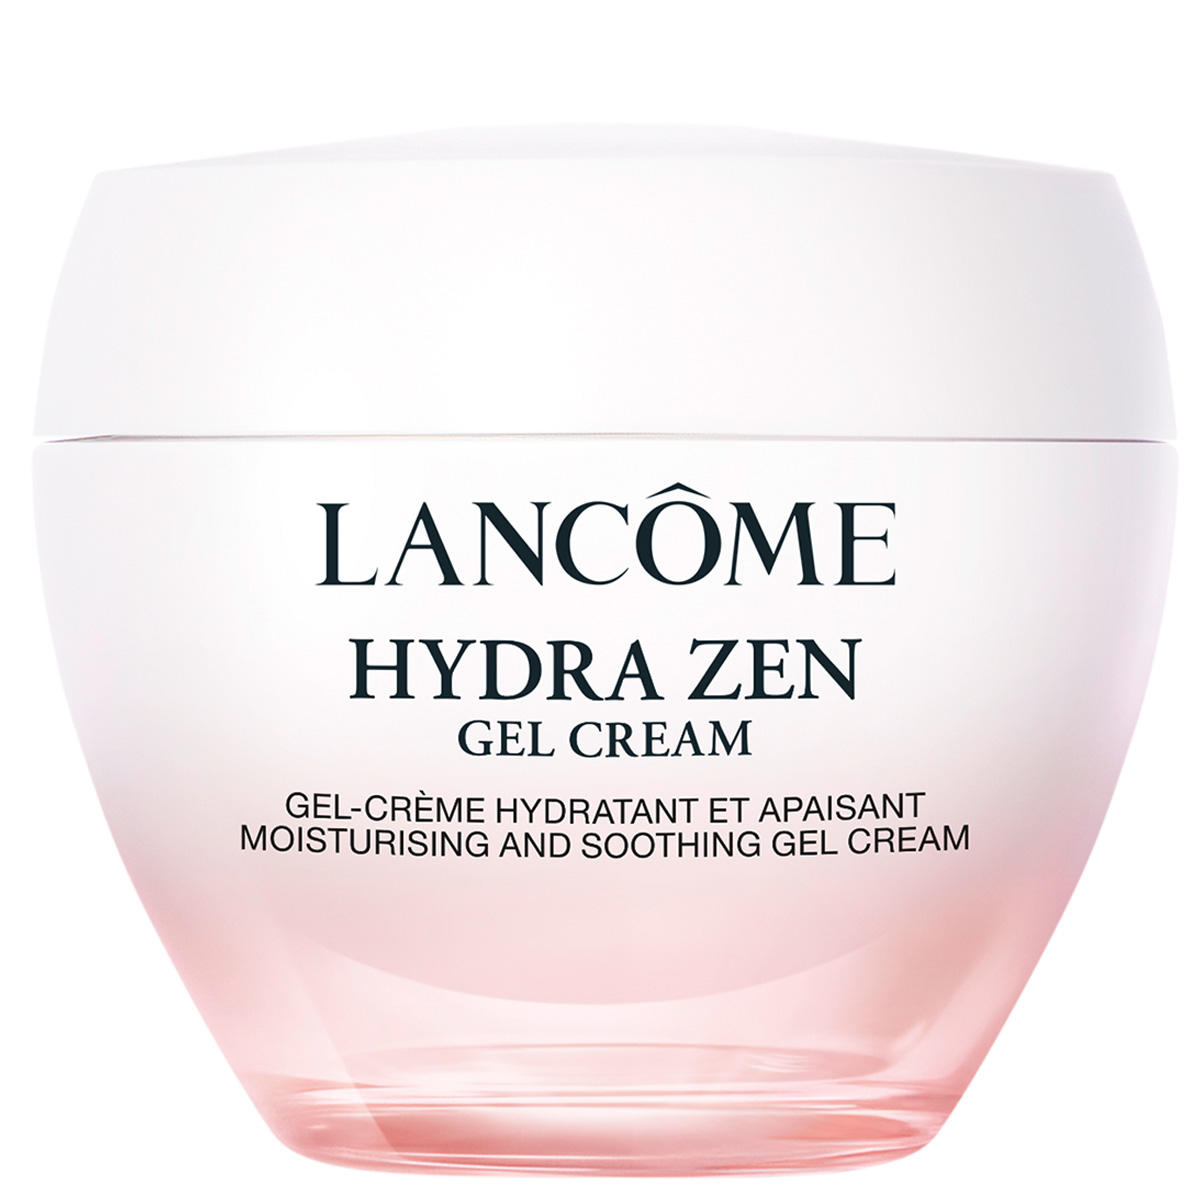 Lancôme Hydra Zen Gel-crème 50 ml - 1